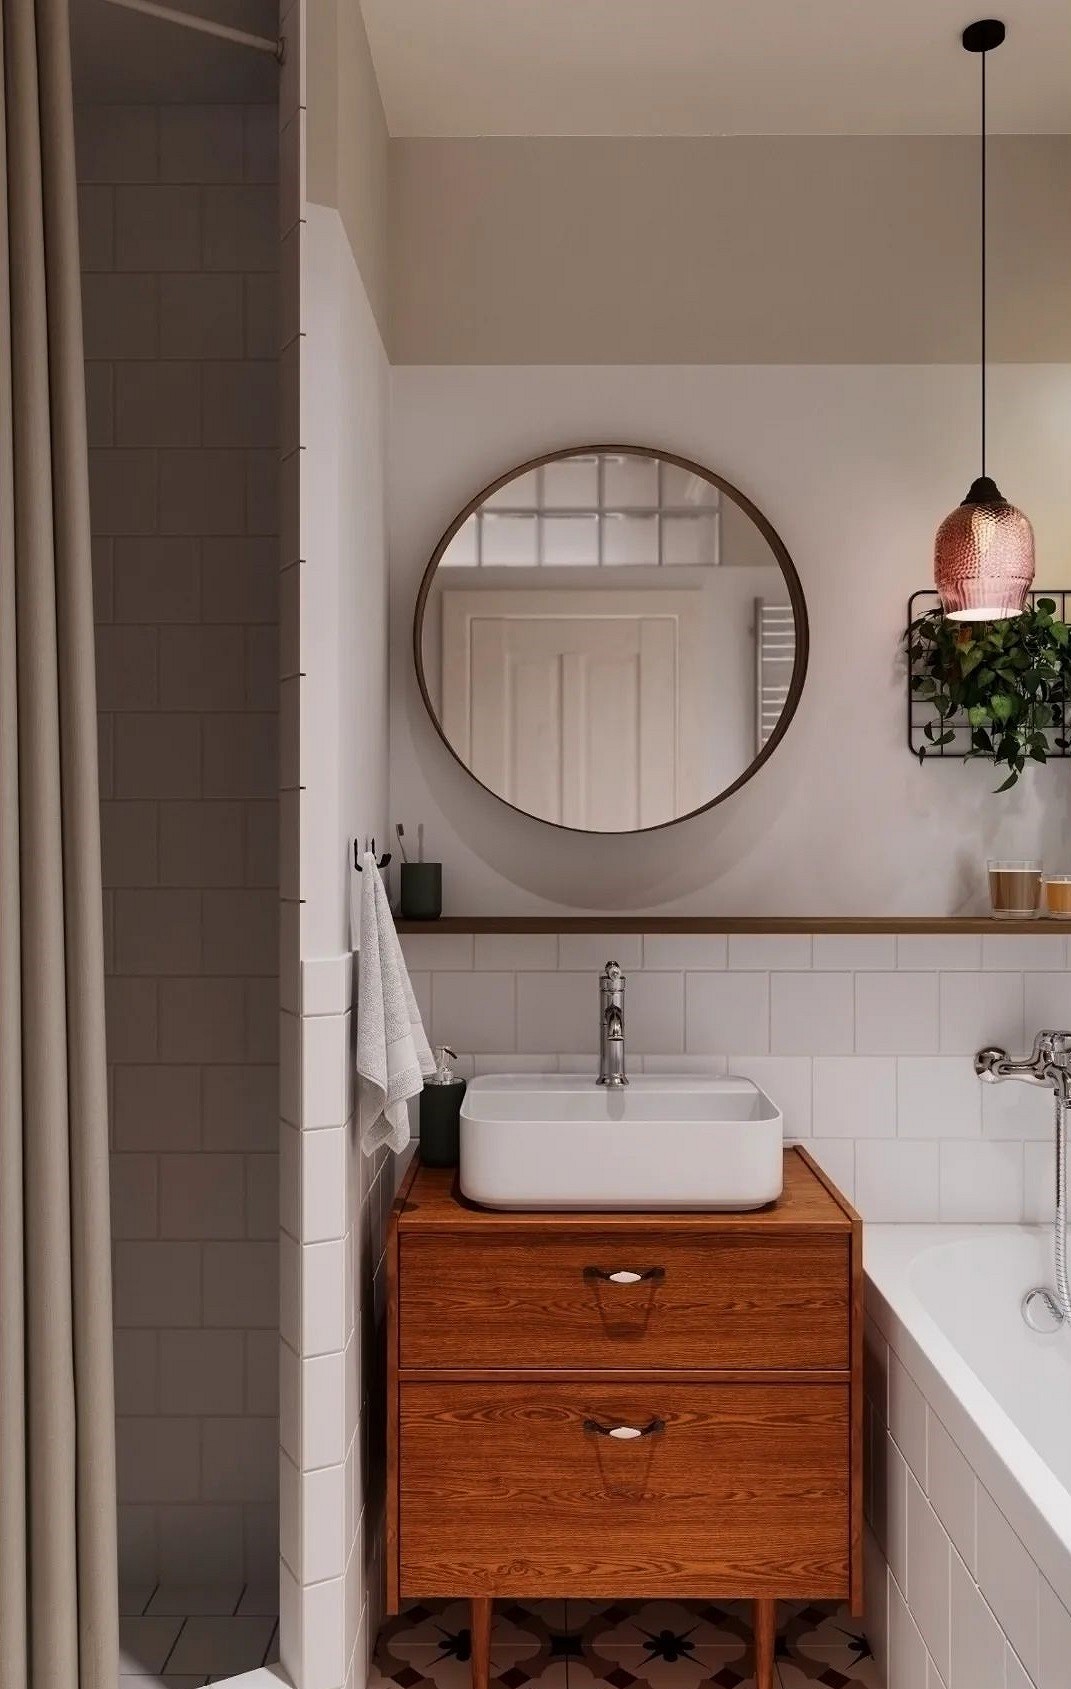 9 необычных решений для ванной комнаты из проектов дизайнеров12